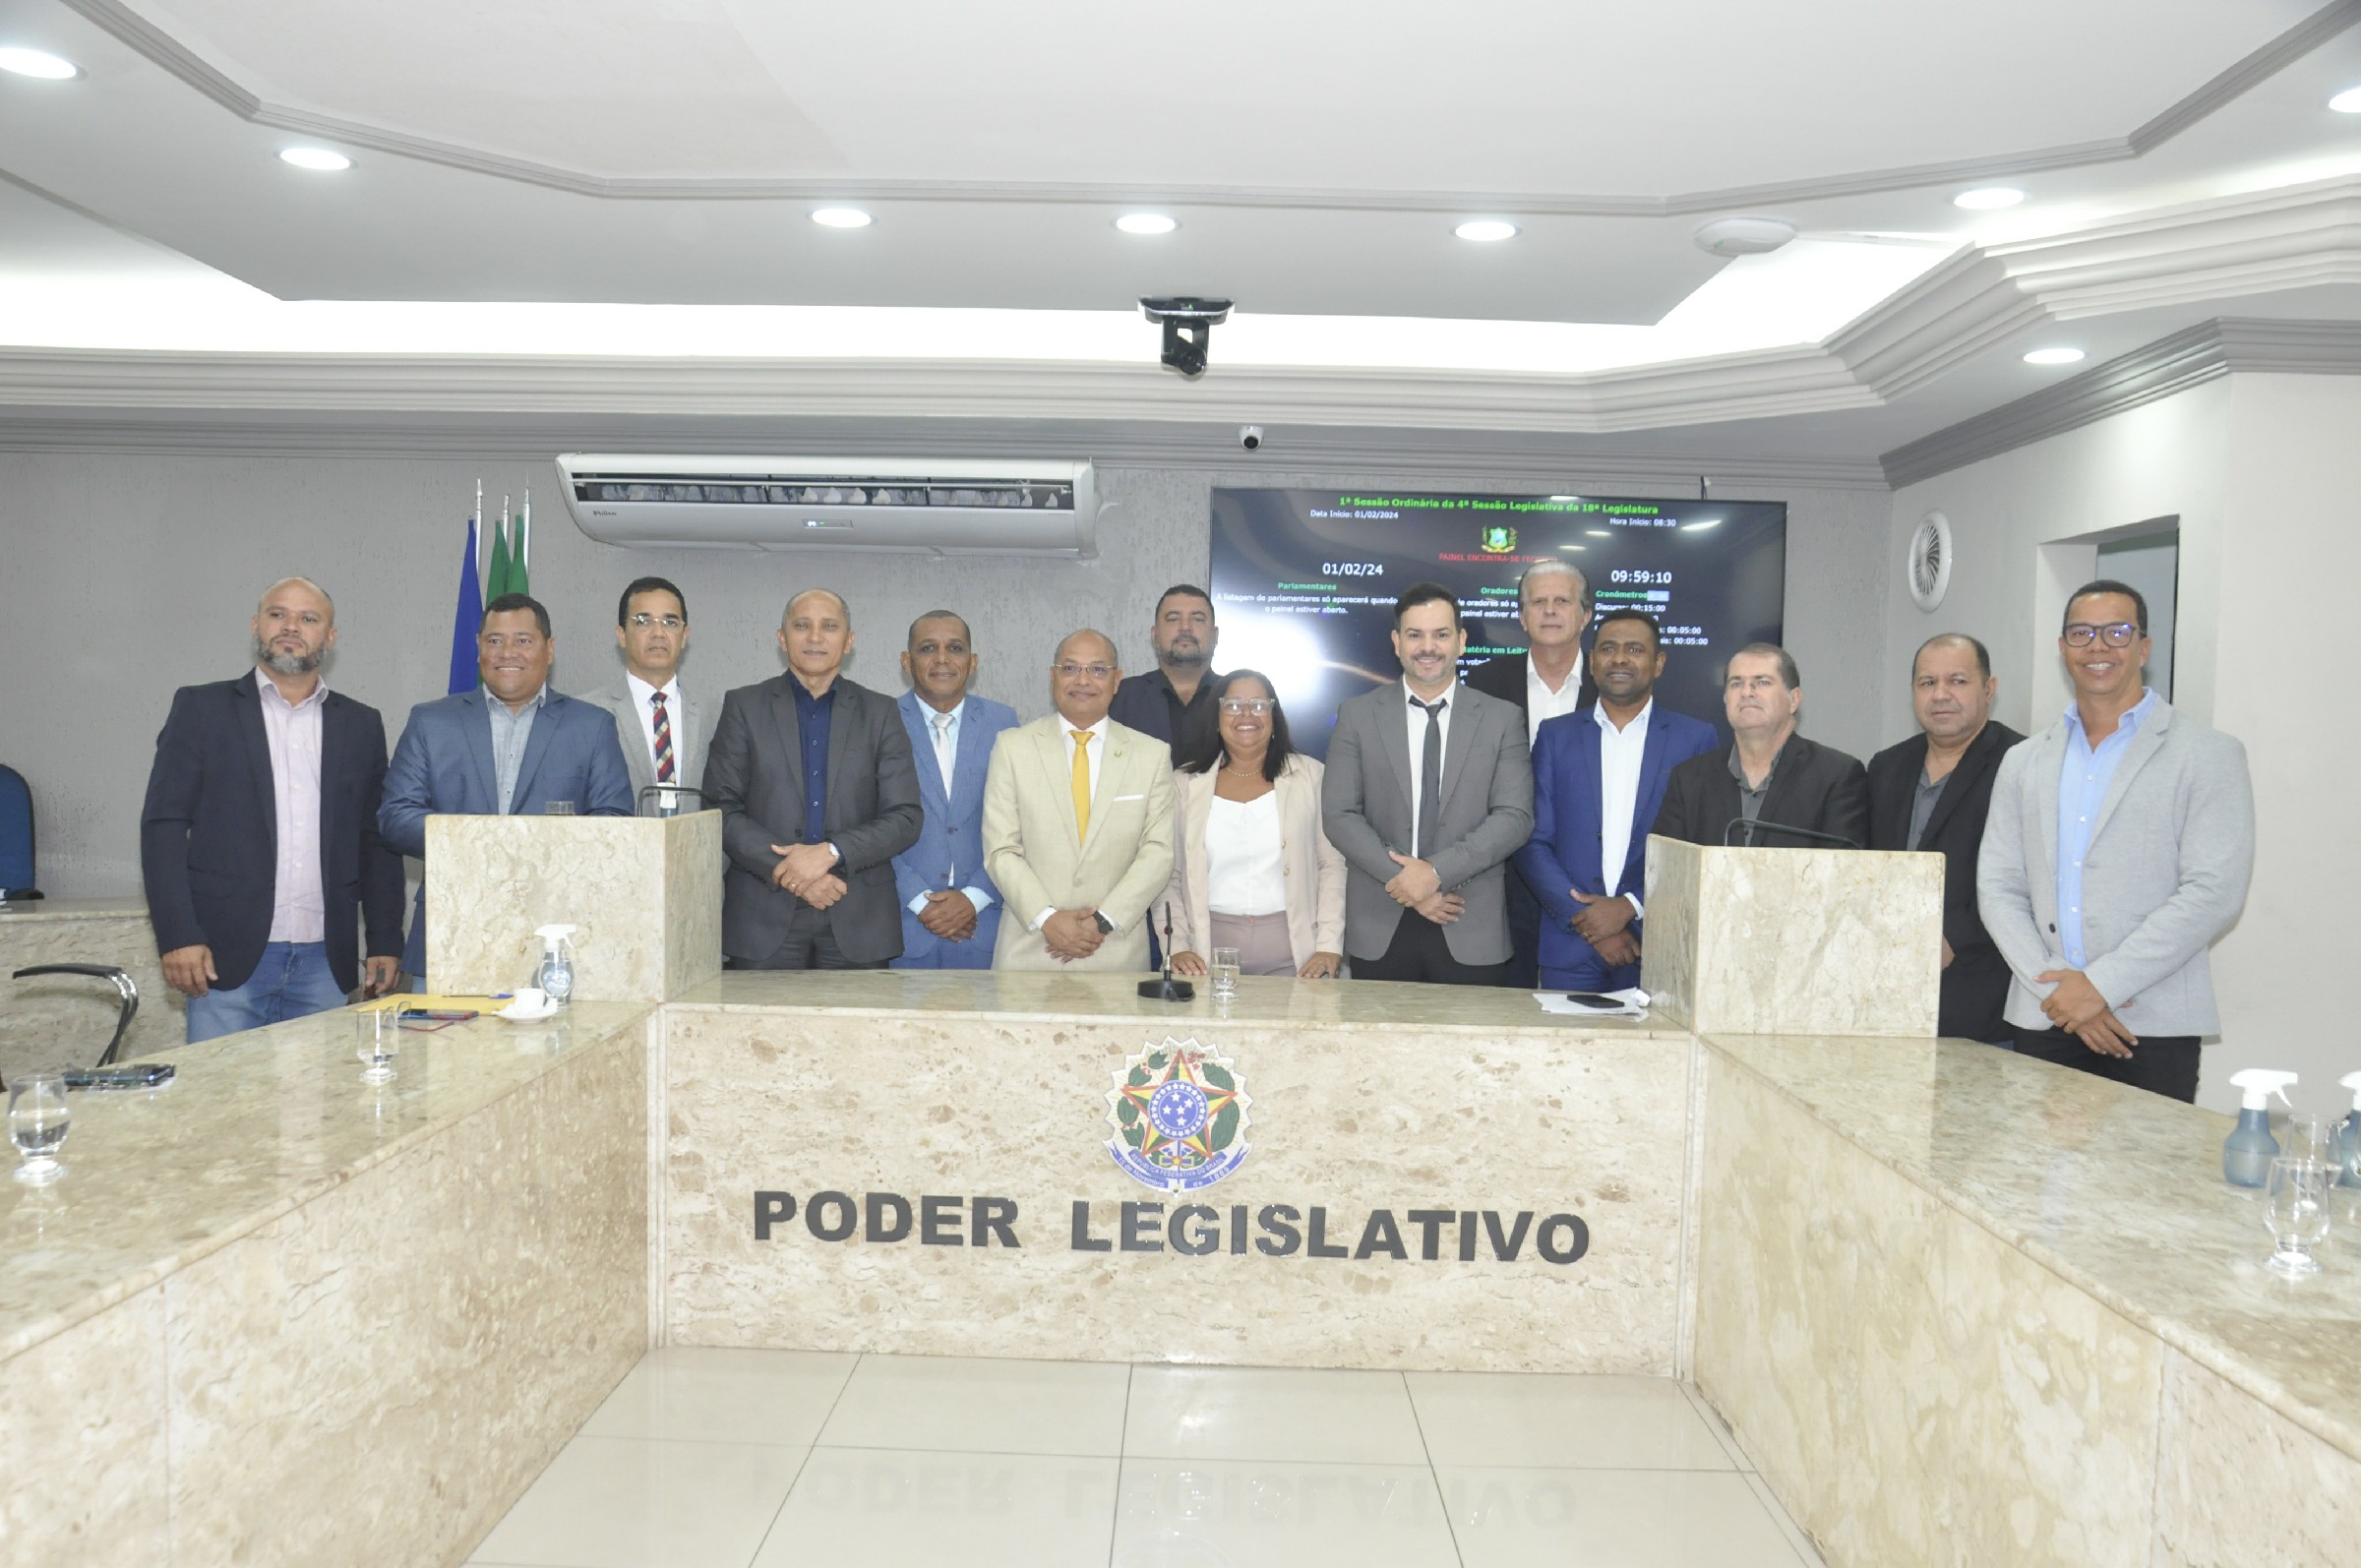 Câmara de Vereadores inicia ano legislativo com a presença do prefeito Vinícius Labanca e vice dr. Gabriel Neto